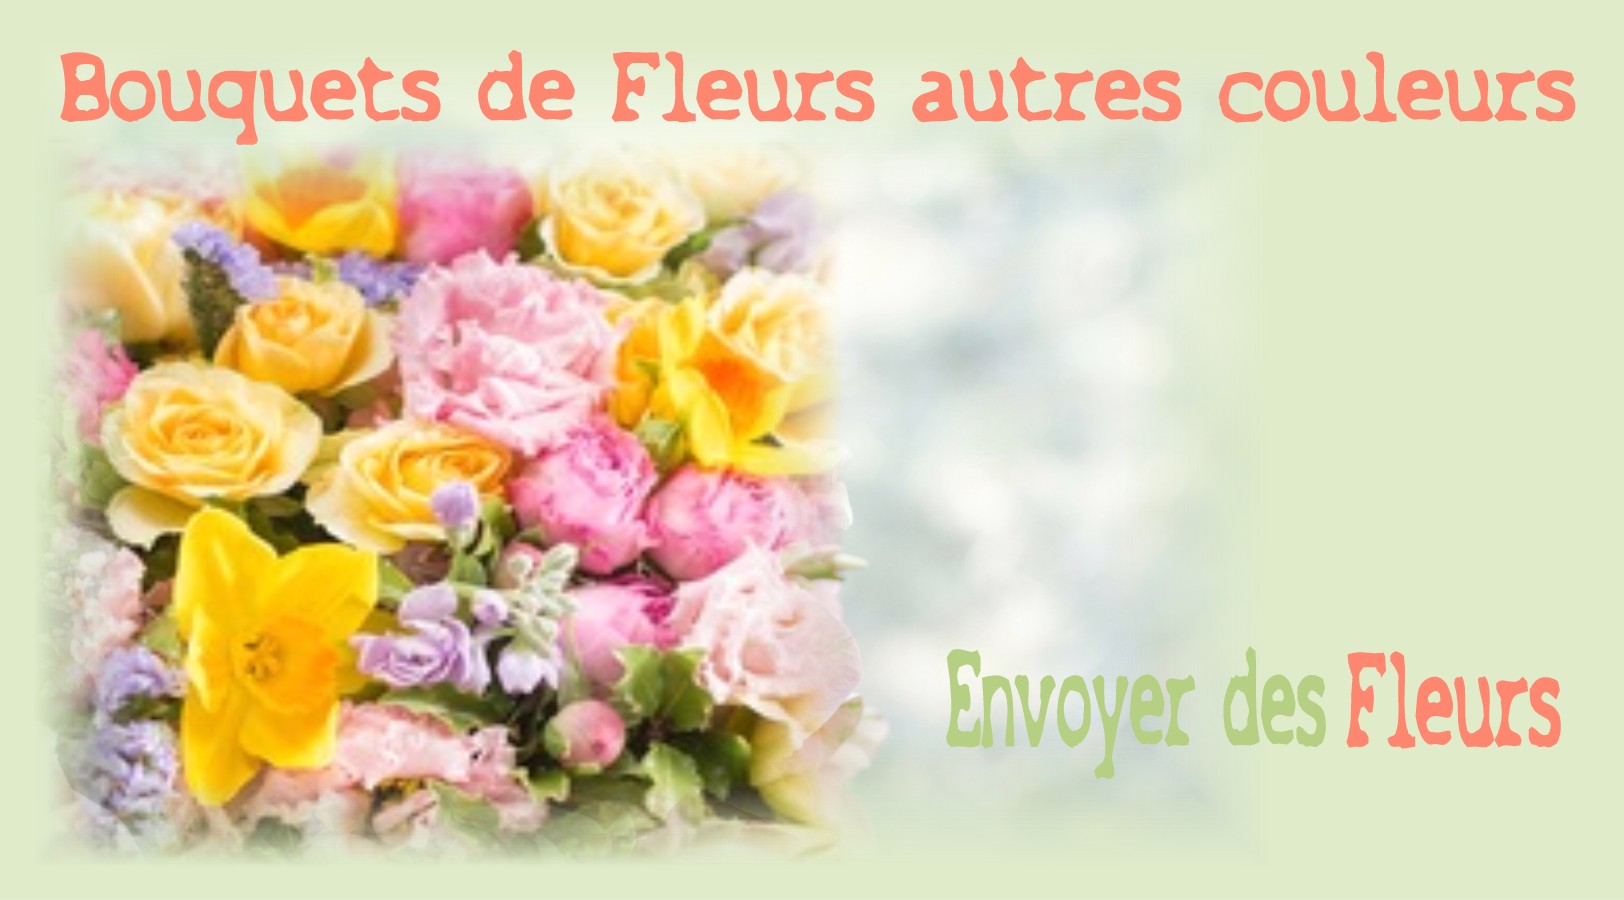 BOUQUETS DE FLEURS AUTRES COULEURS - FLEURISTE LILLE (59) - ENVOYER DES FLEURS